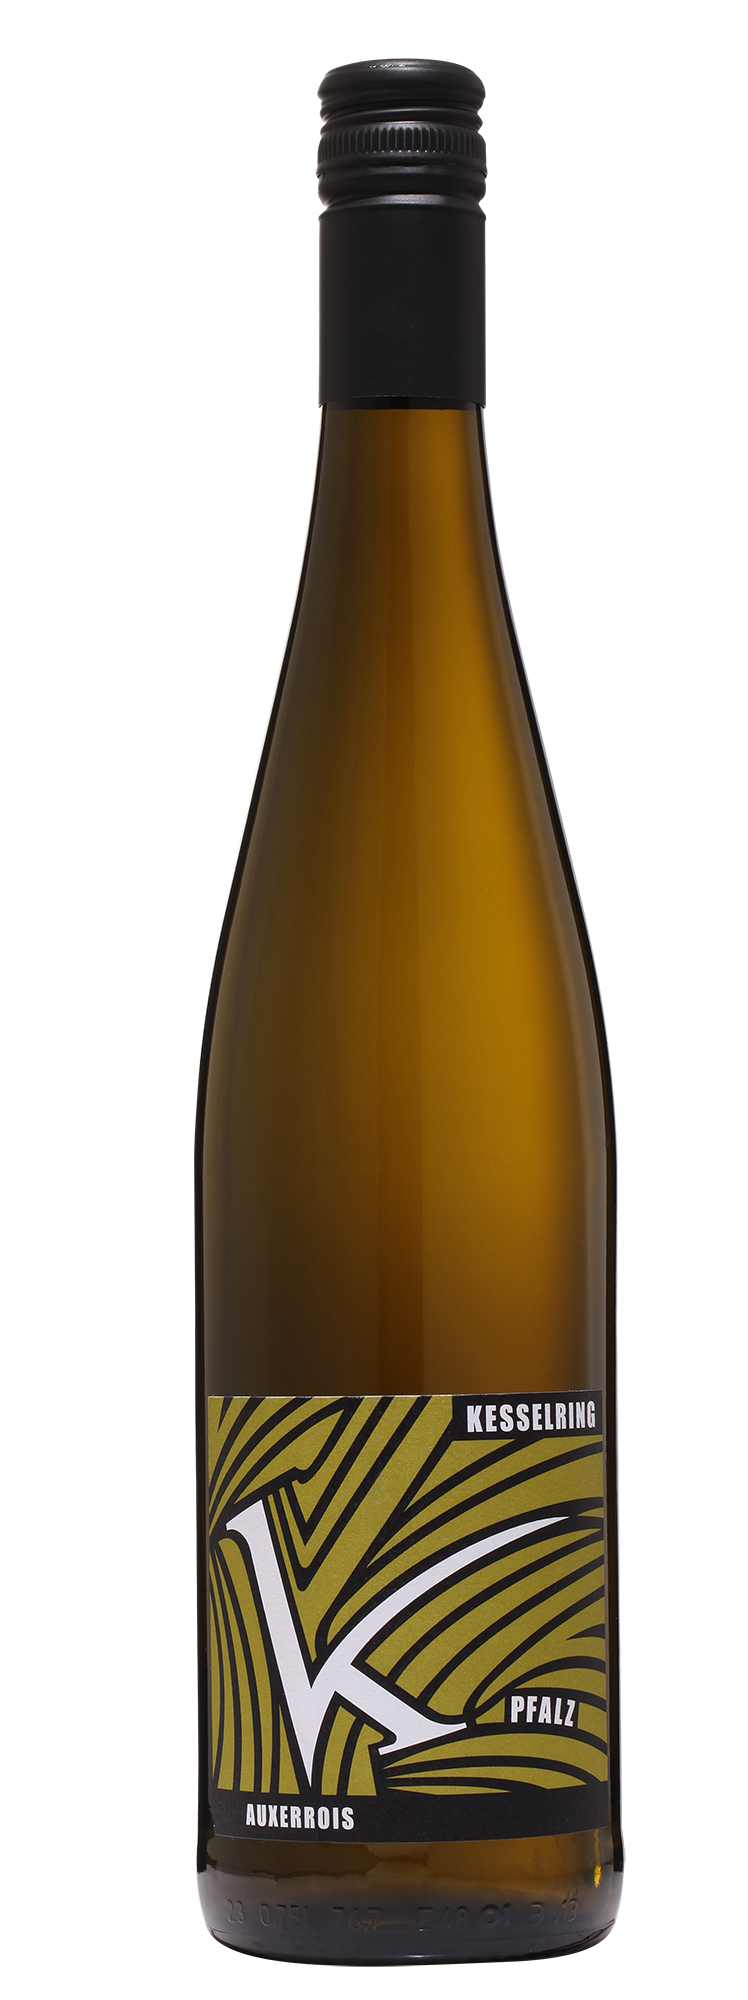 2021 Auxerrois Qualitätswein - Ökolog. Anbau 0.75l